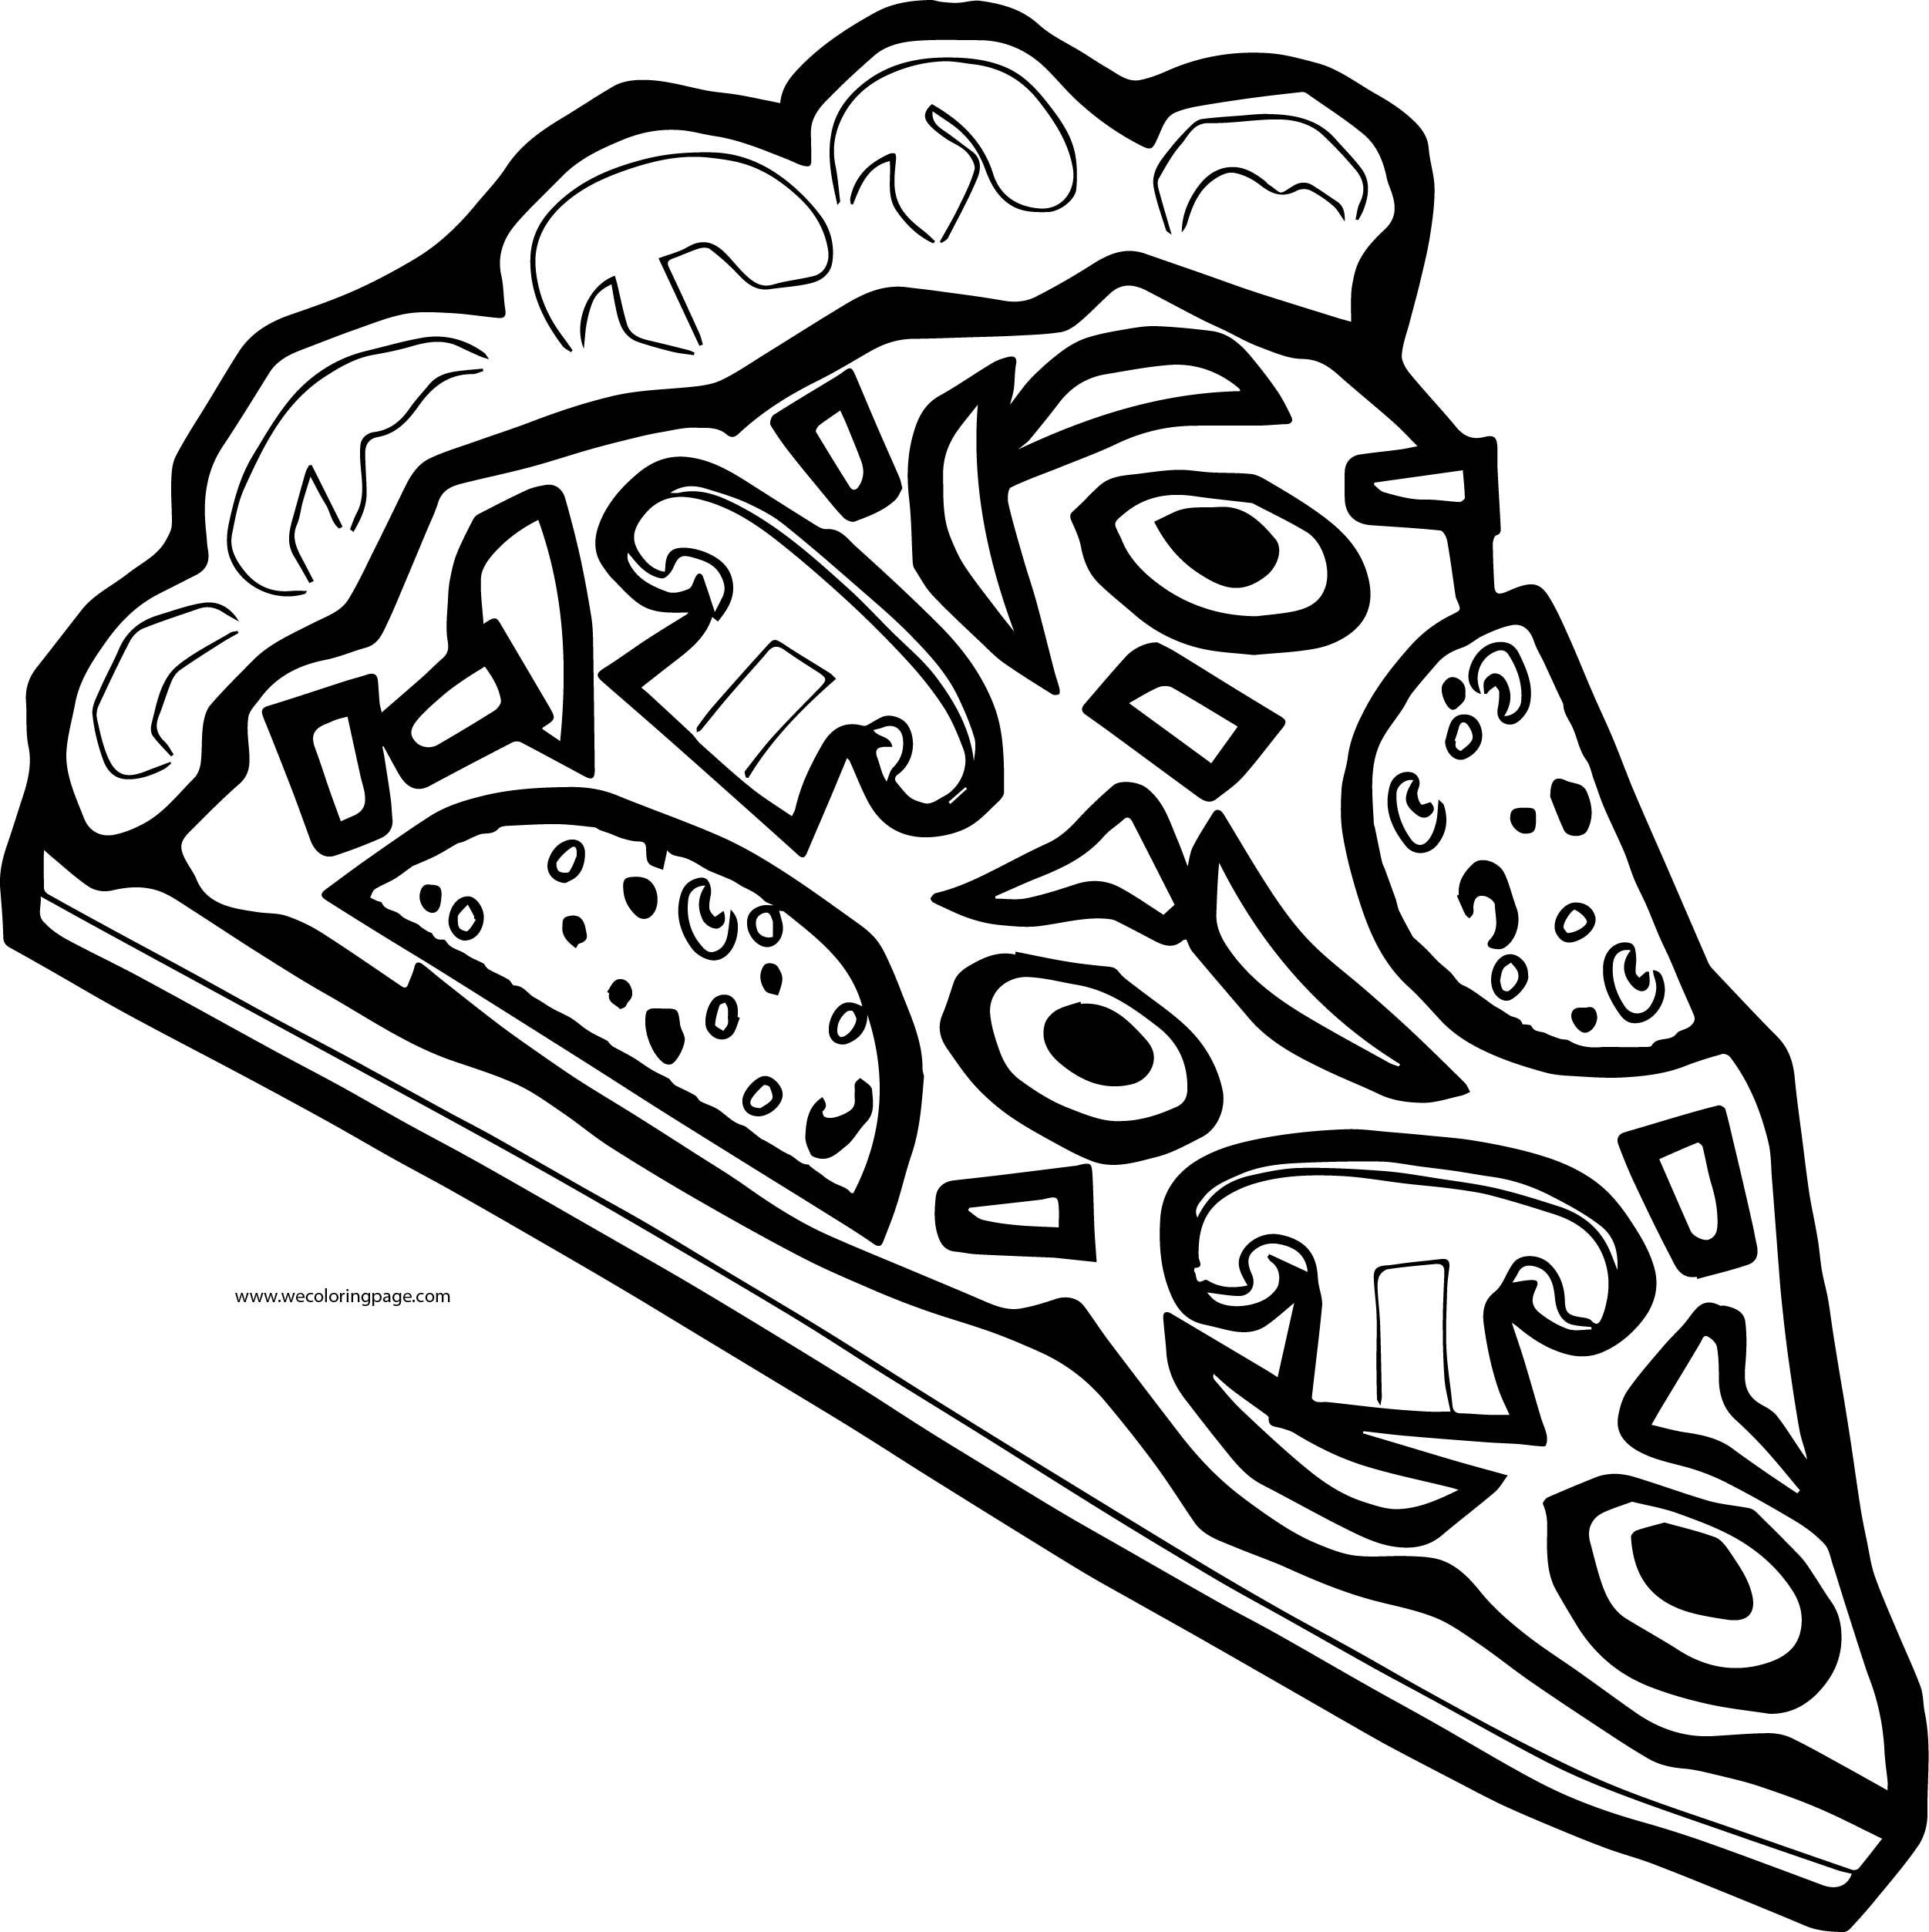 Пицца черно белая. Раскраска пицца. Пицца для распечатки. Пицца для рисования черно белая. Пицца раскраска для детей.